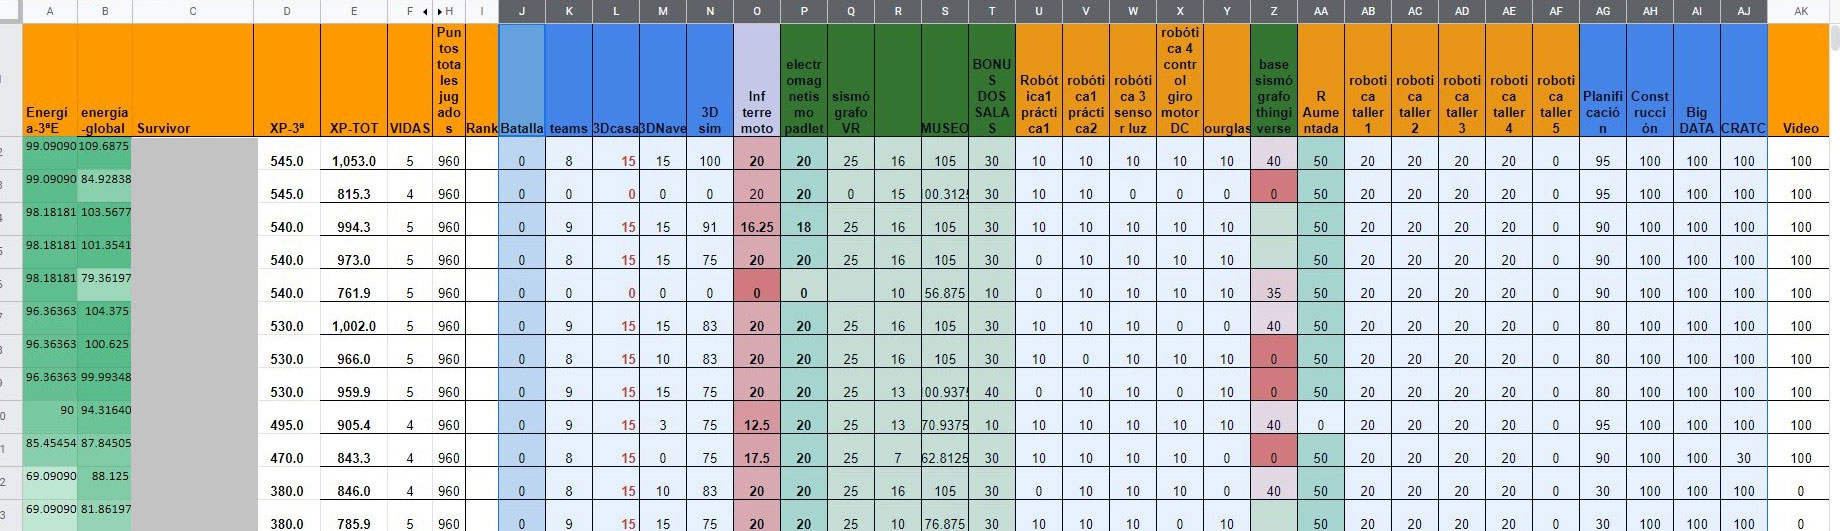 Tablón de clasificación con la puntuación y clasificación de los alumnos y alumnas.